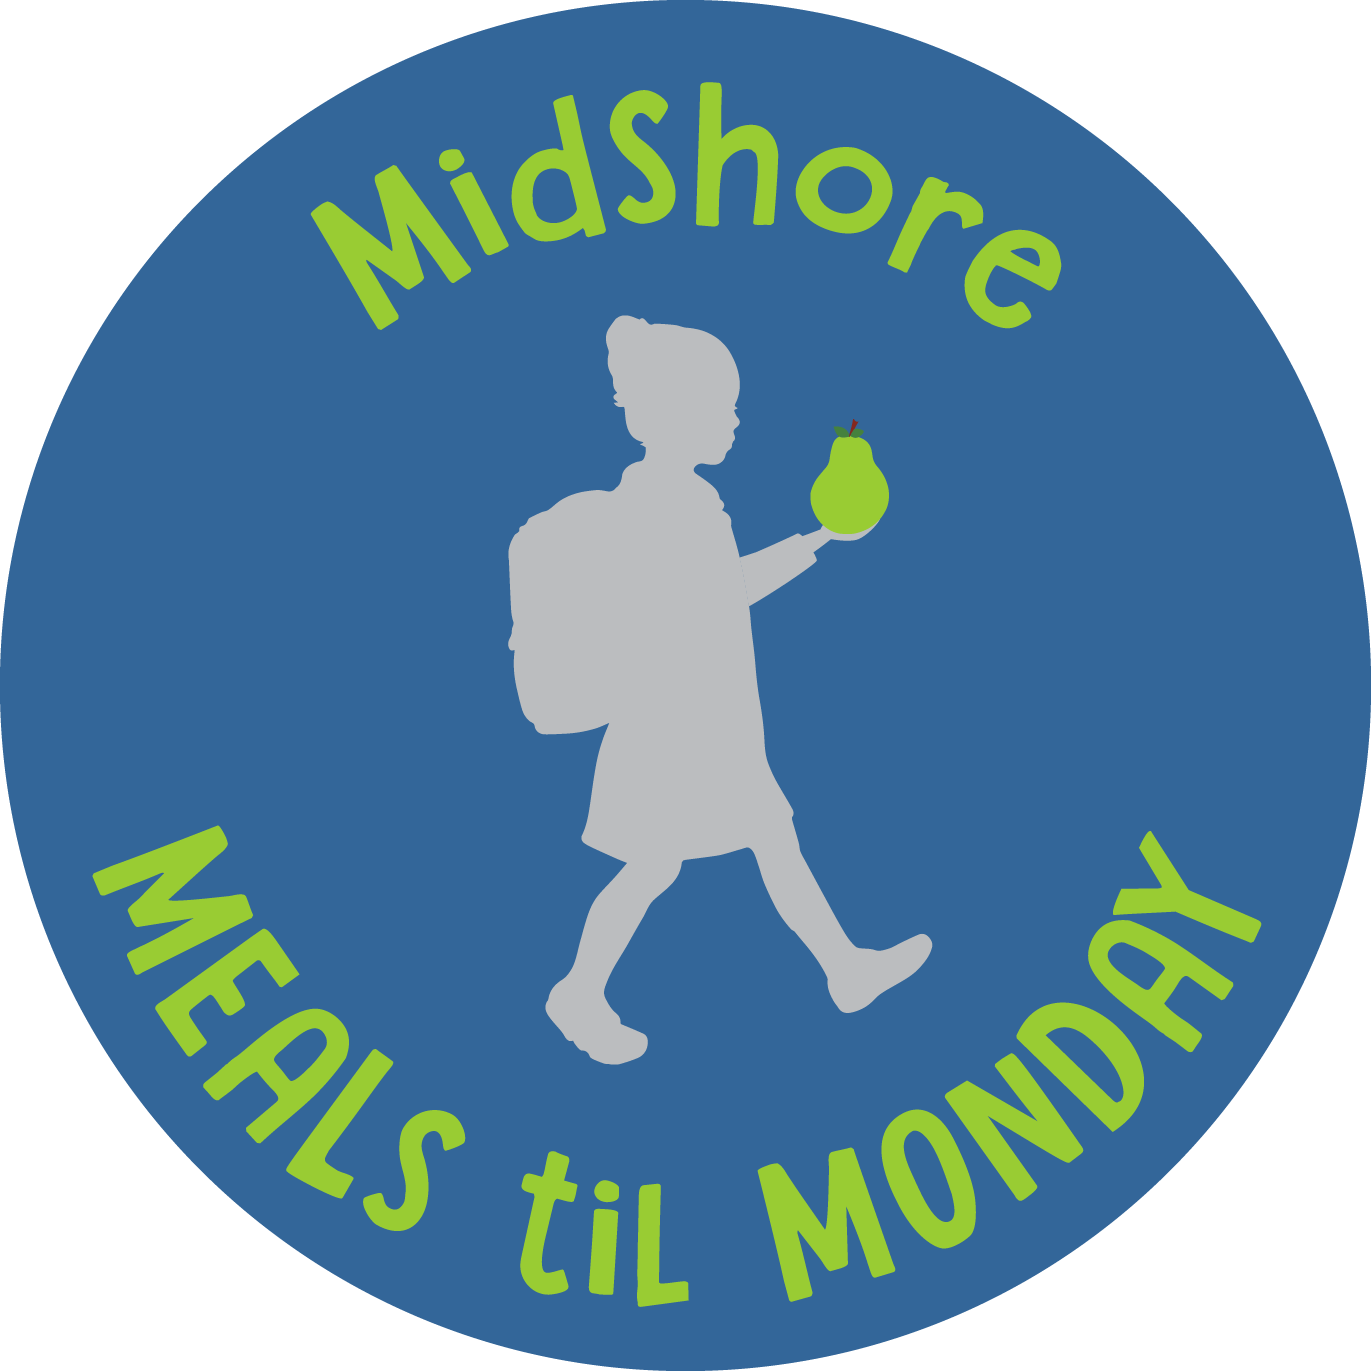 MidShore Meals til Monday